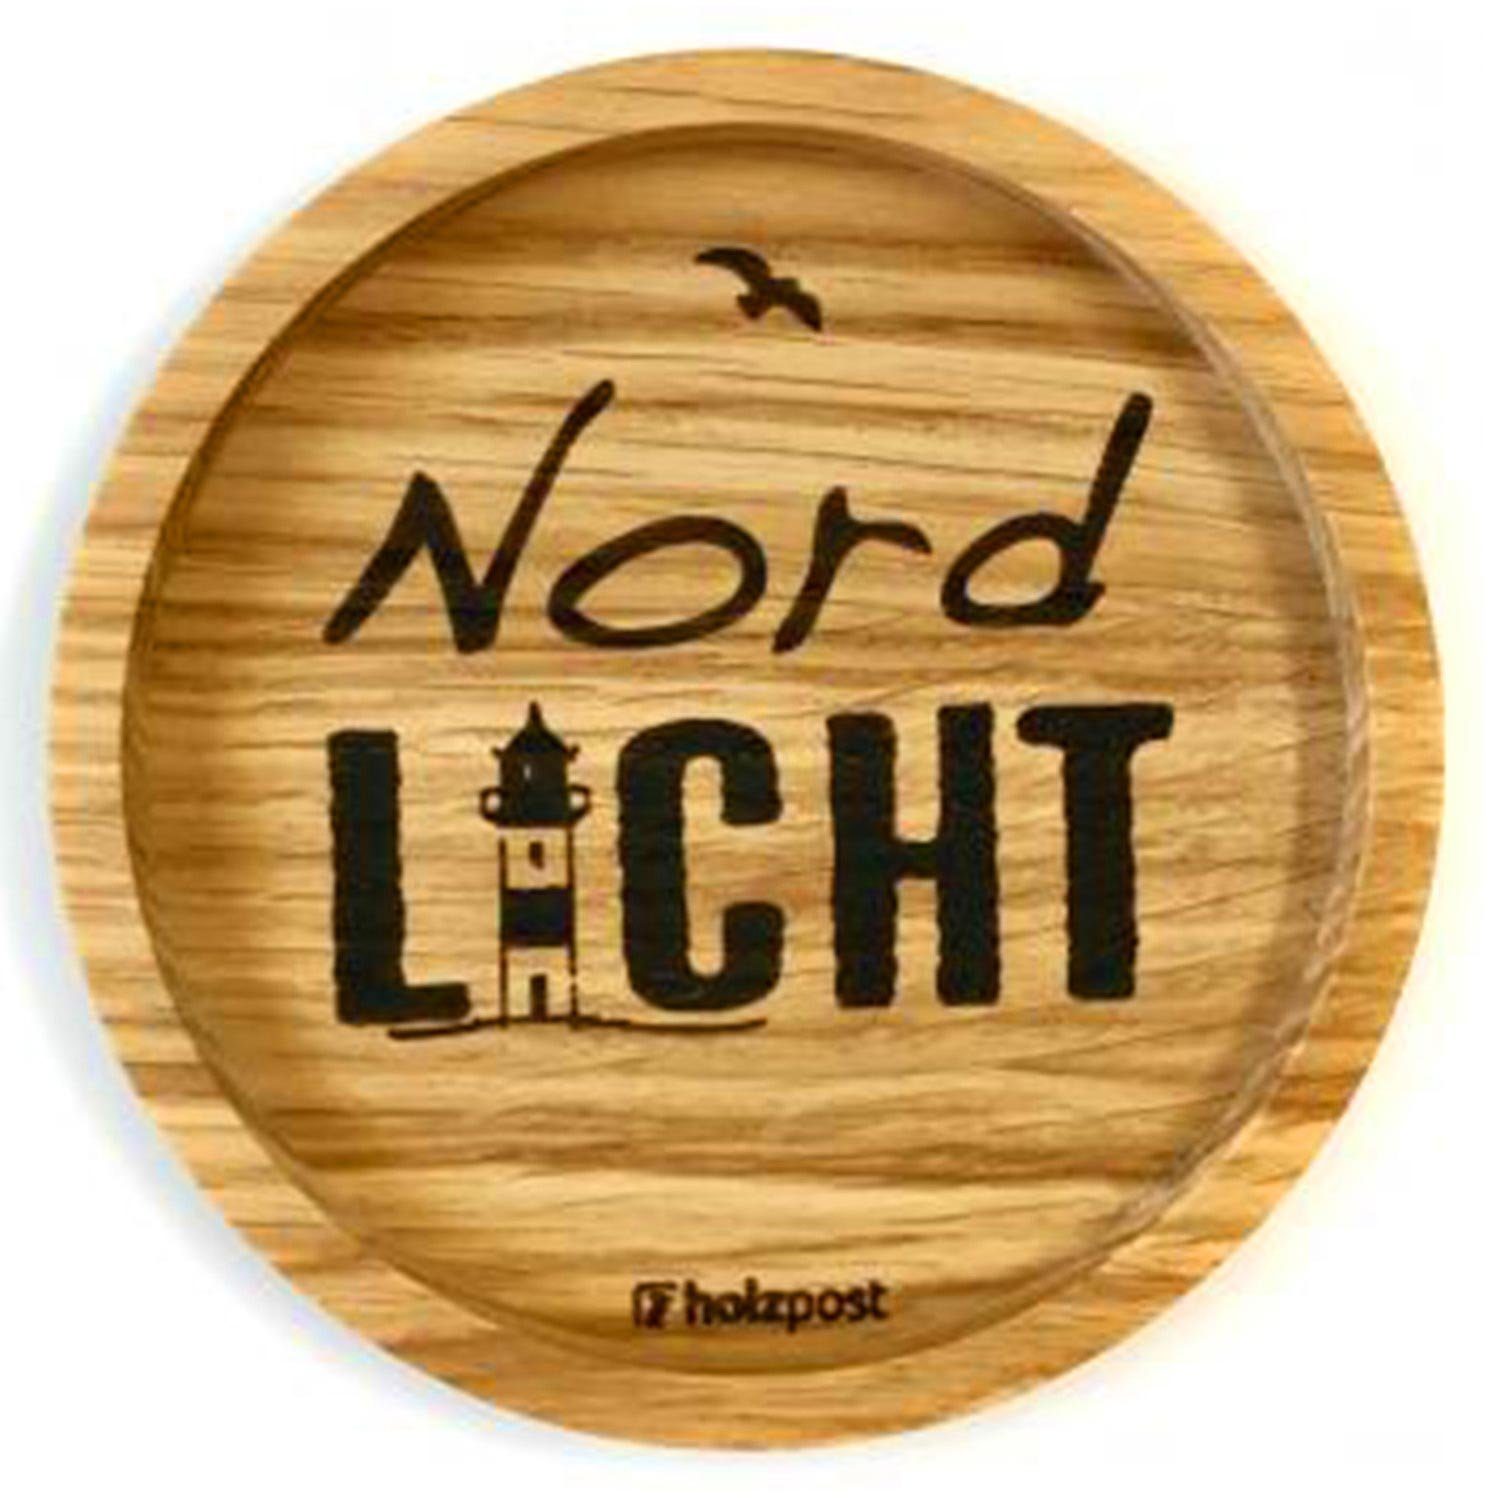 Landshop24 Getränkeuntersetzer Holzpost, Untersetzer, NordLicht, Zubehör für Kaffeebecher Weinglas Bierglas Flasche, aus Eichenholz